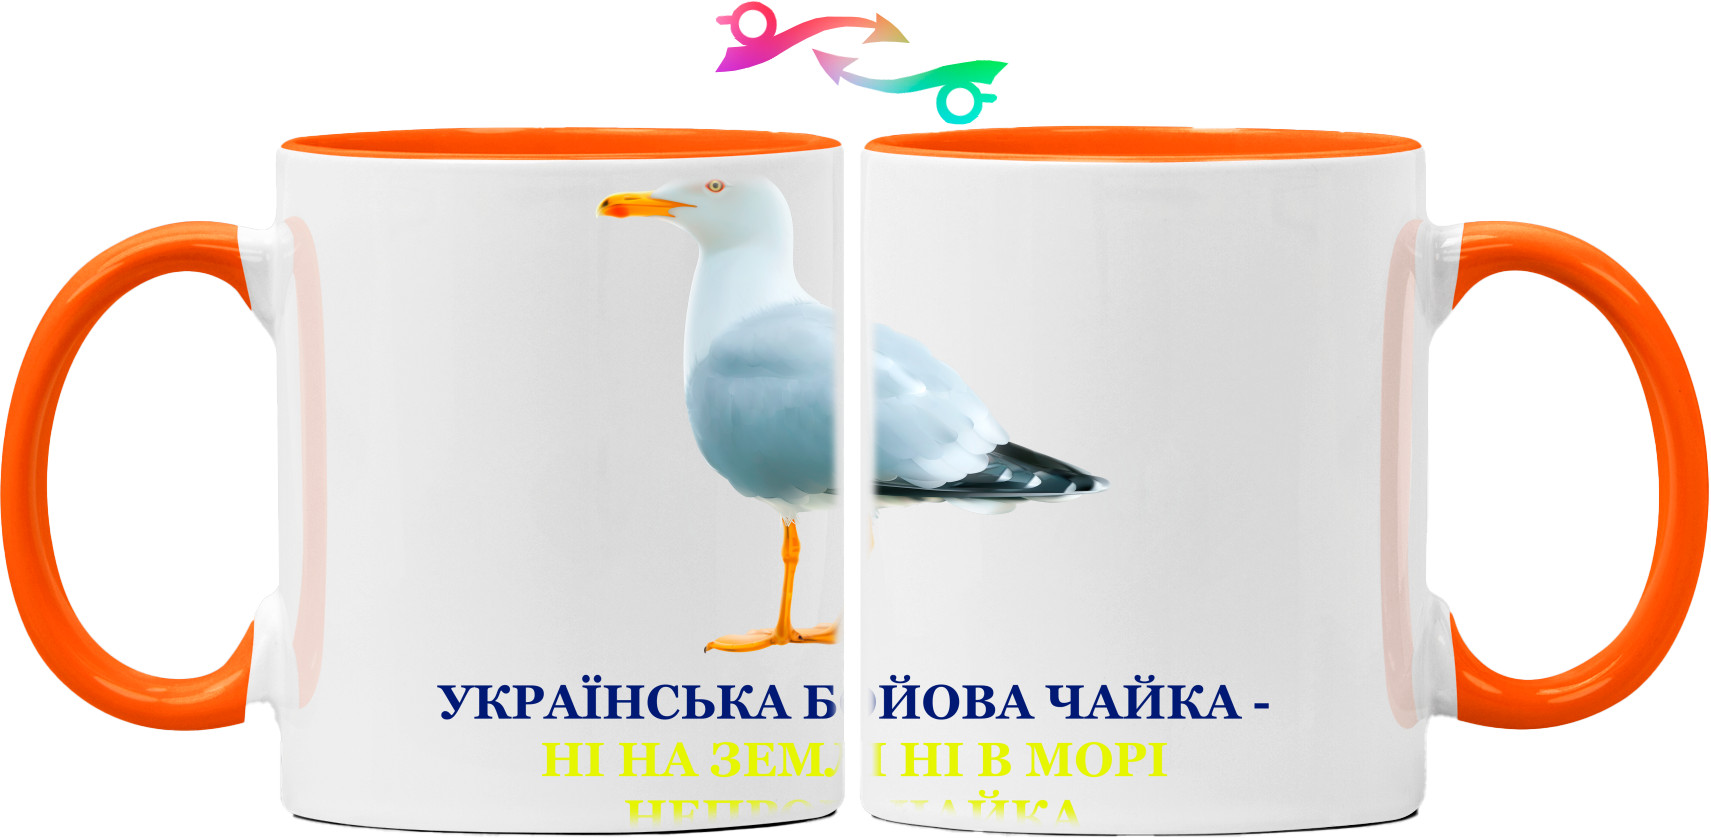 Українська чайка